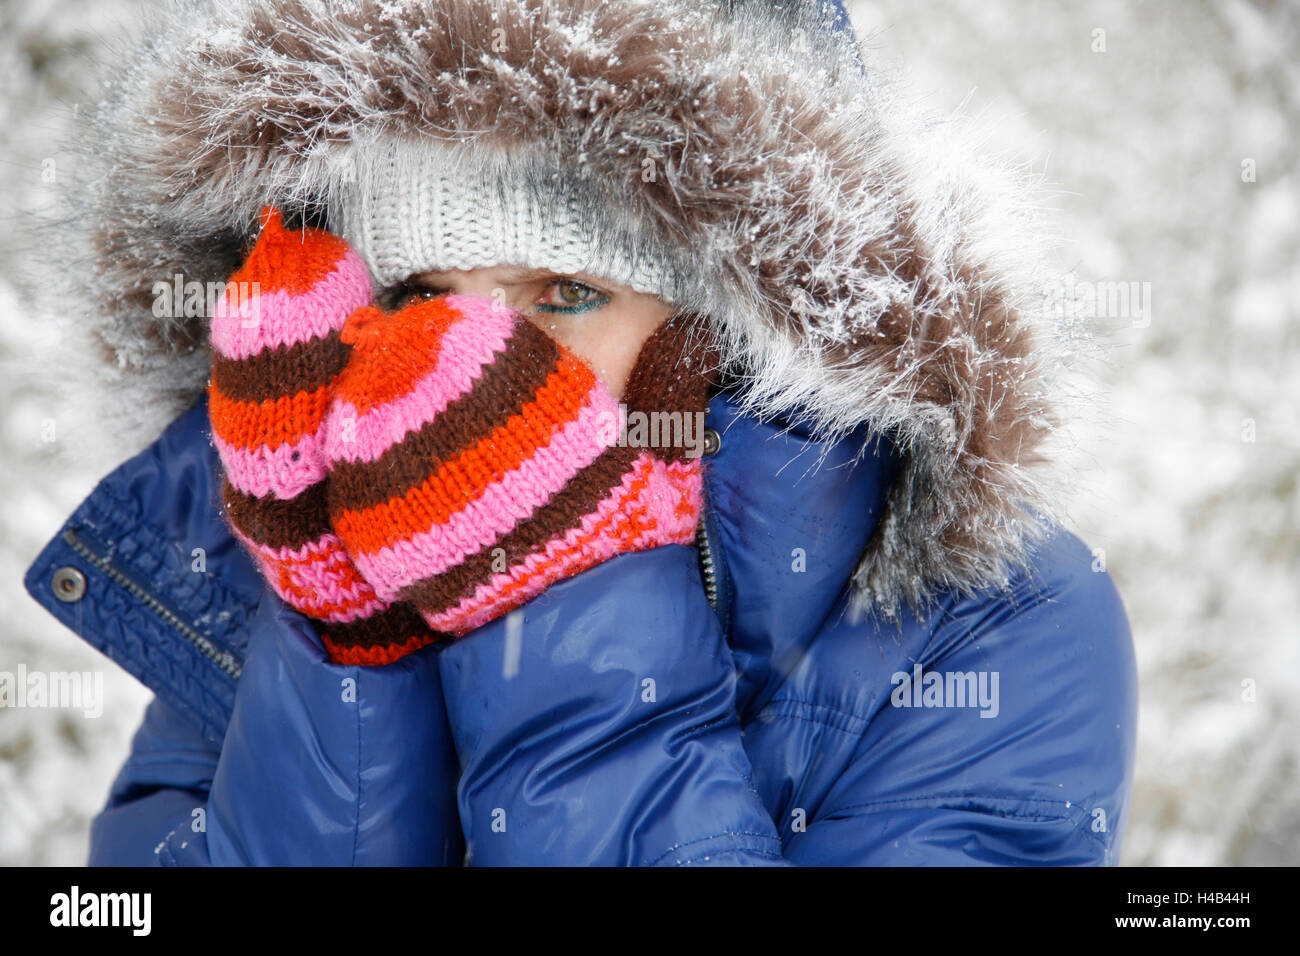 Woman, winter clothes, freezing, portrait Stock Photo